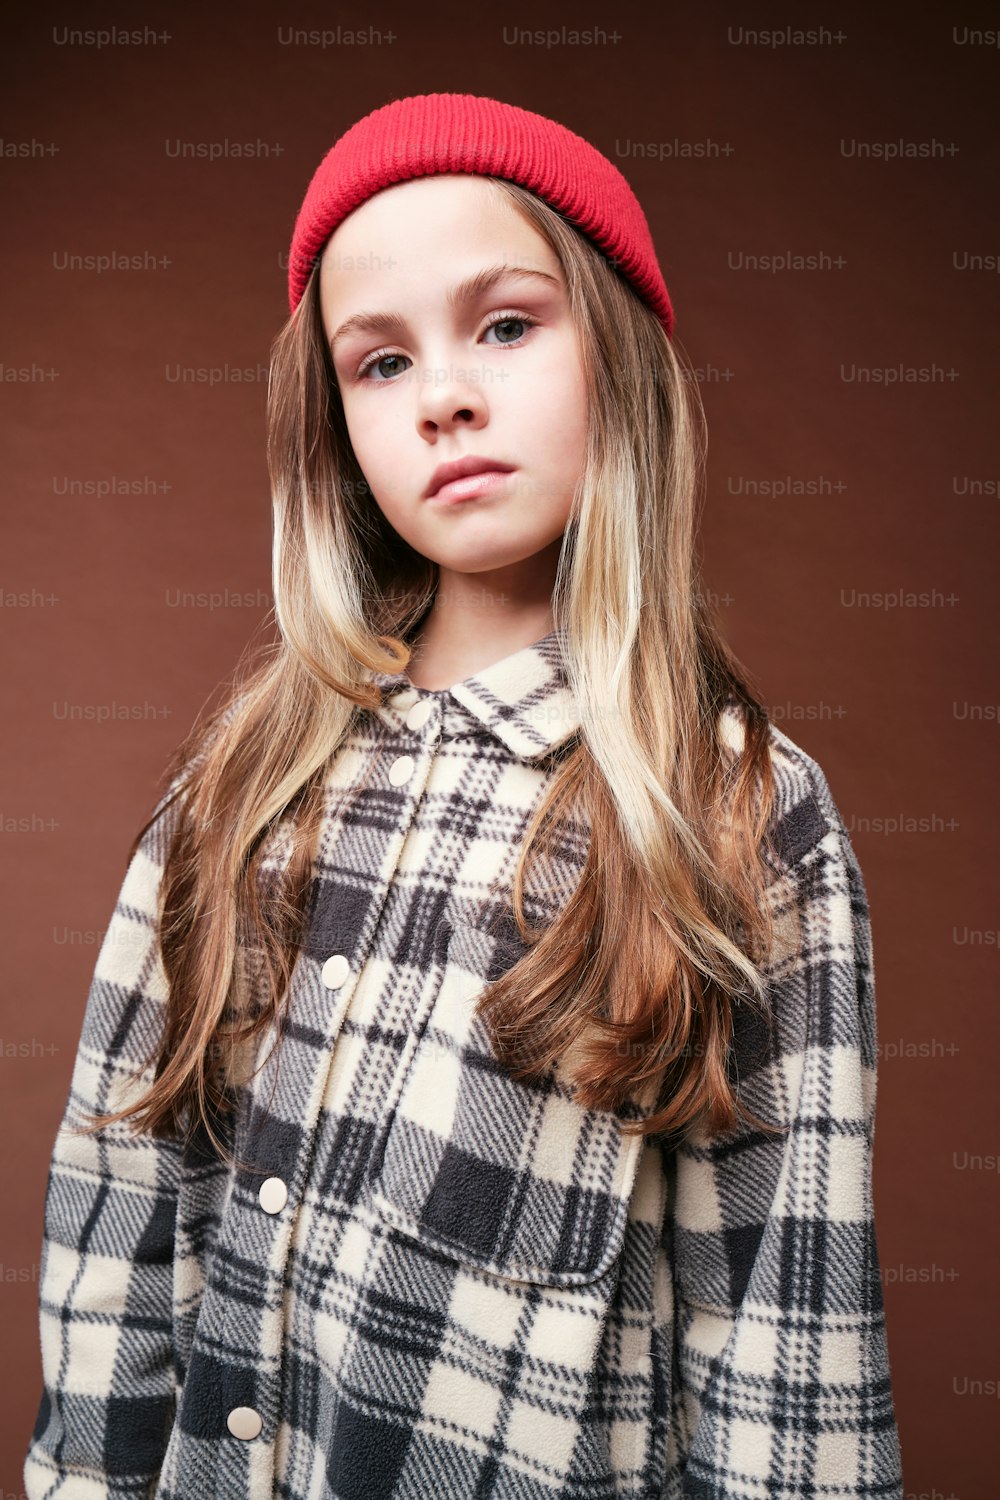 Ein junges Mädchen trägt einen karierten Mantel und eine rote Mütze